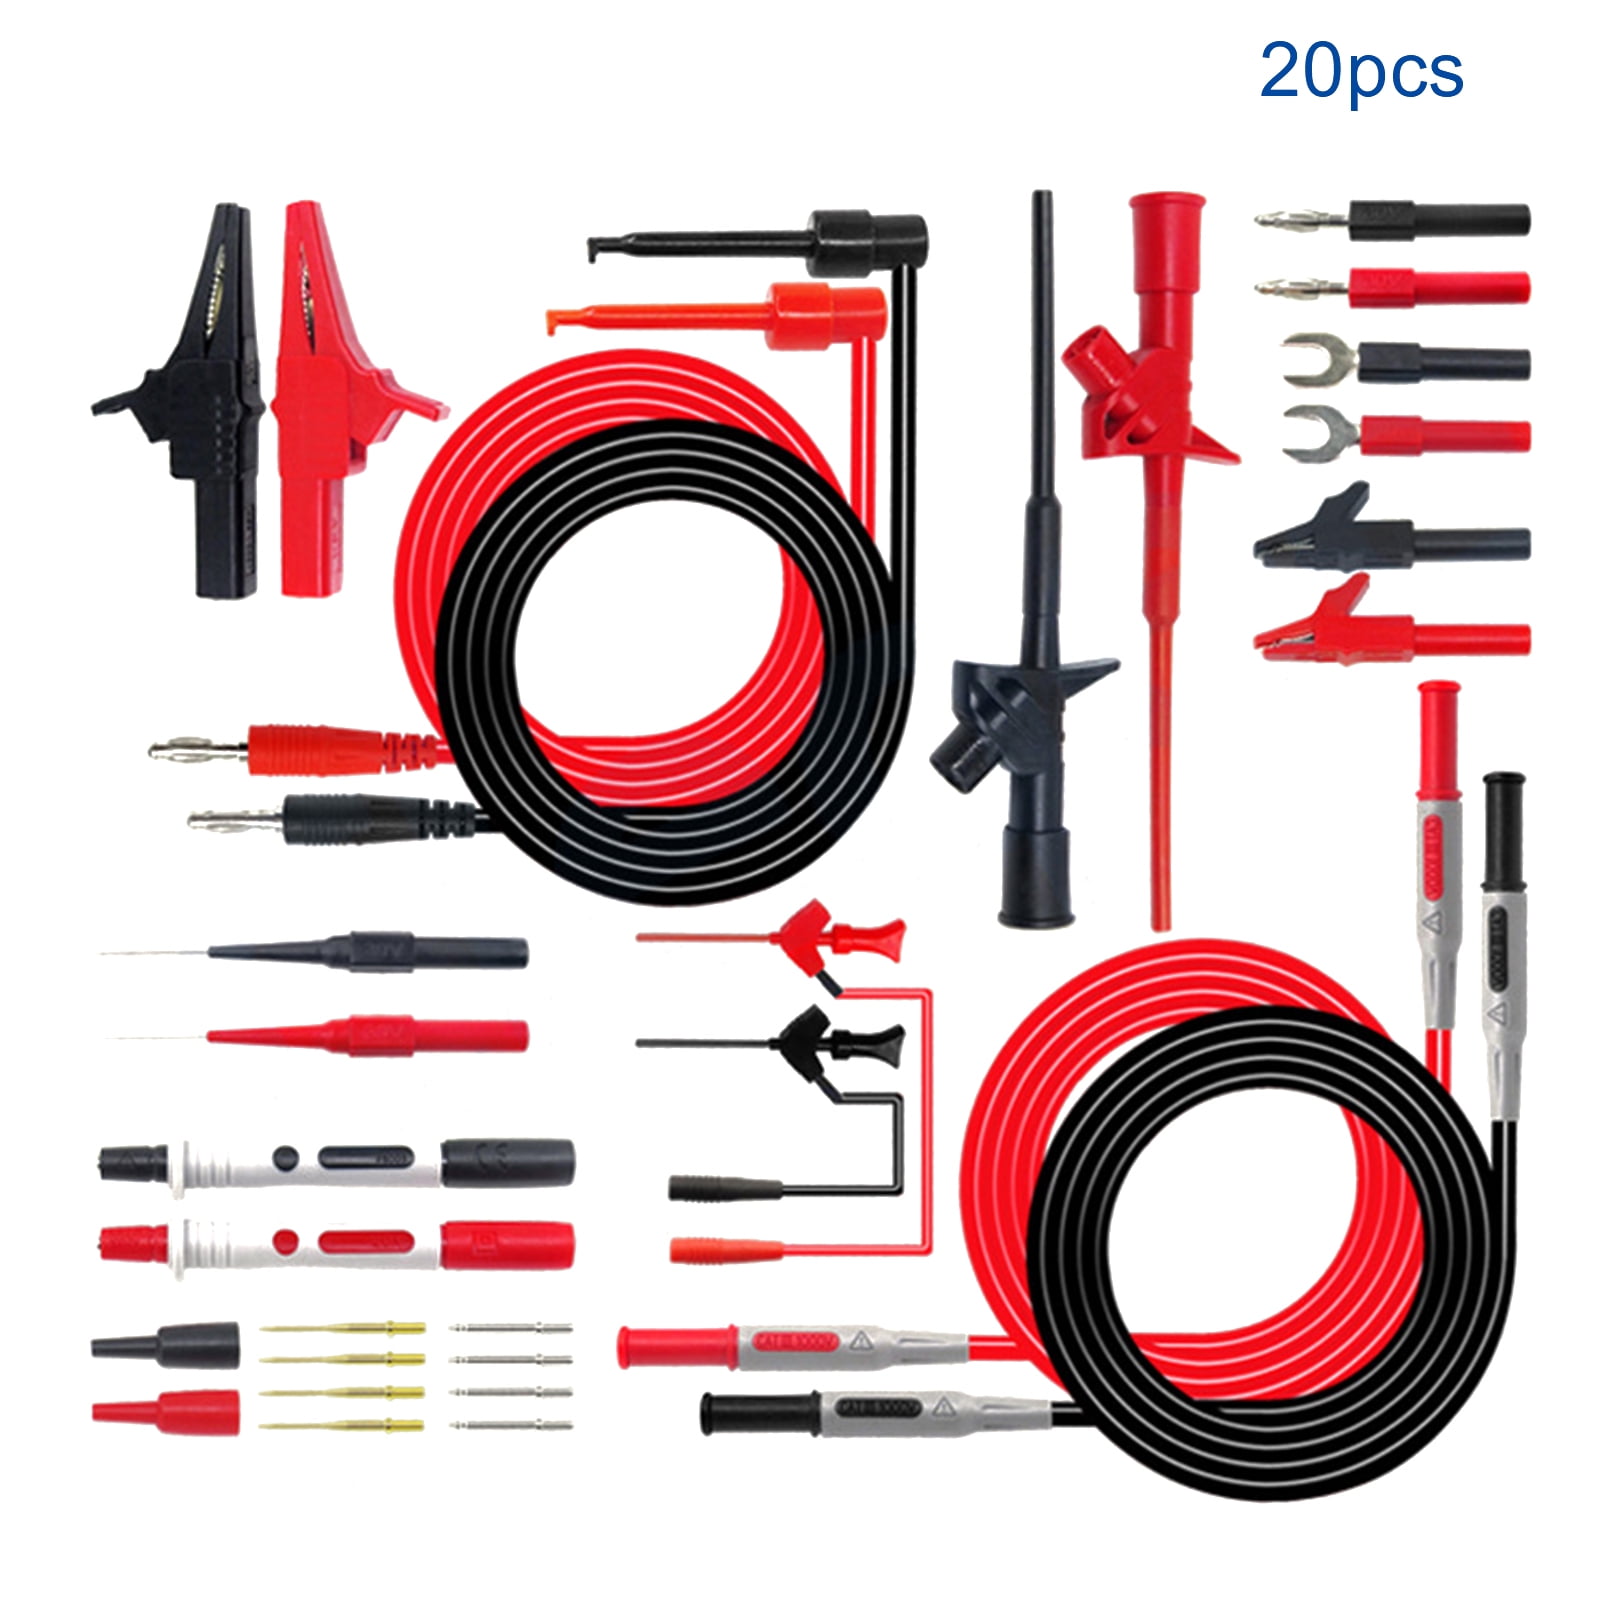 2x Electrical Test Hook Multimeter Test Probe  Grabber Black+Red 